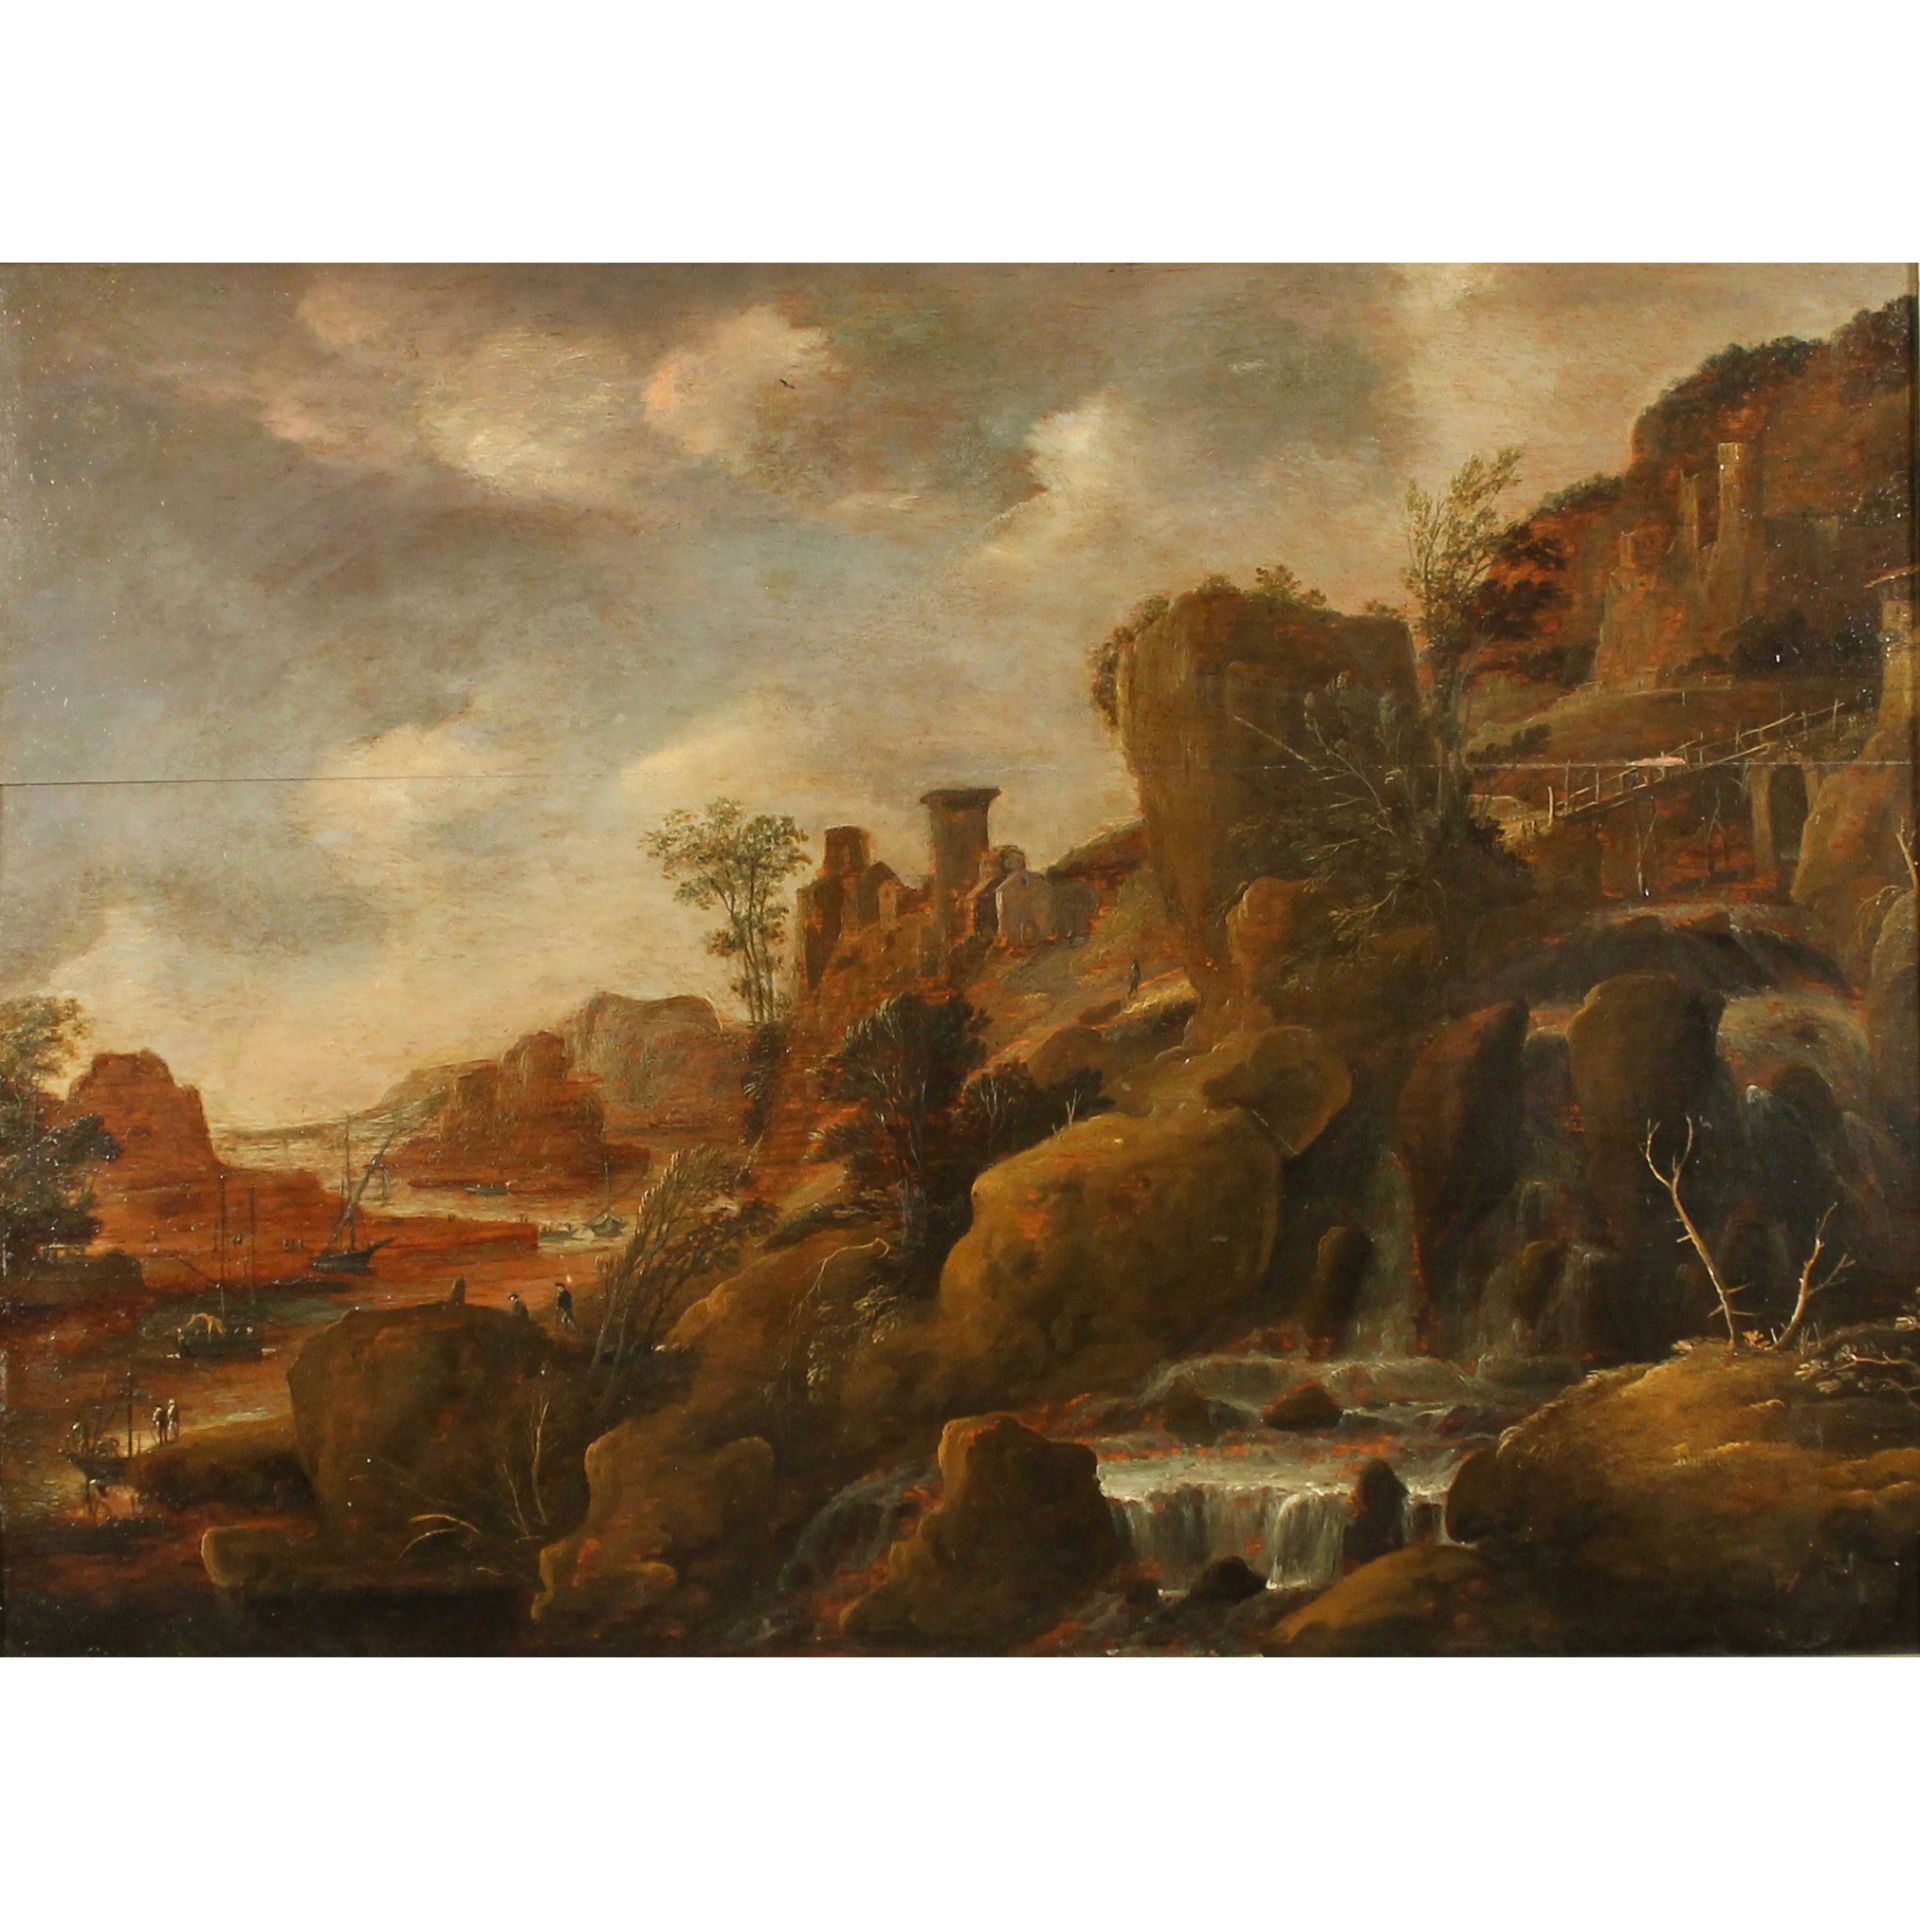 D. VERHAERT (1631-1664) "Paesaggi con ruscello e figure" - "Landscapes with stream and figures"